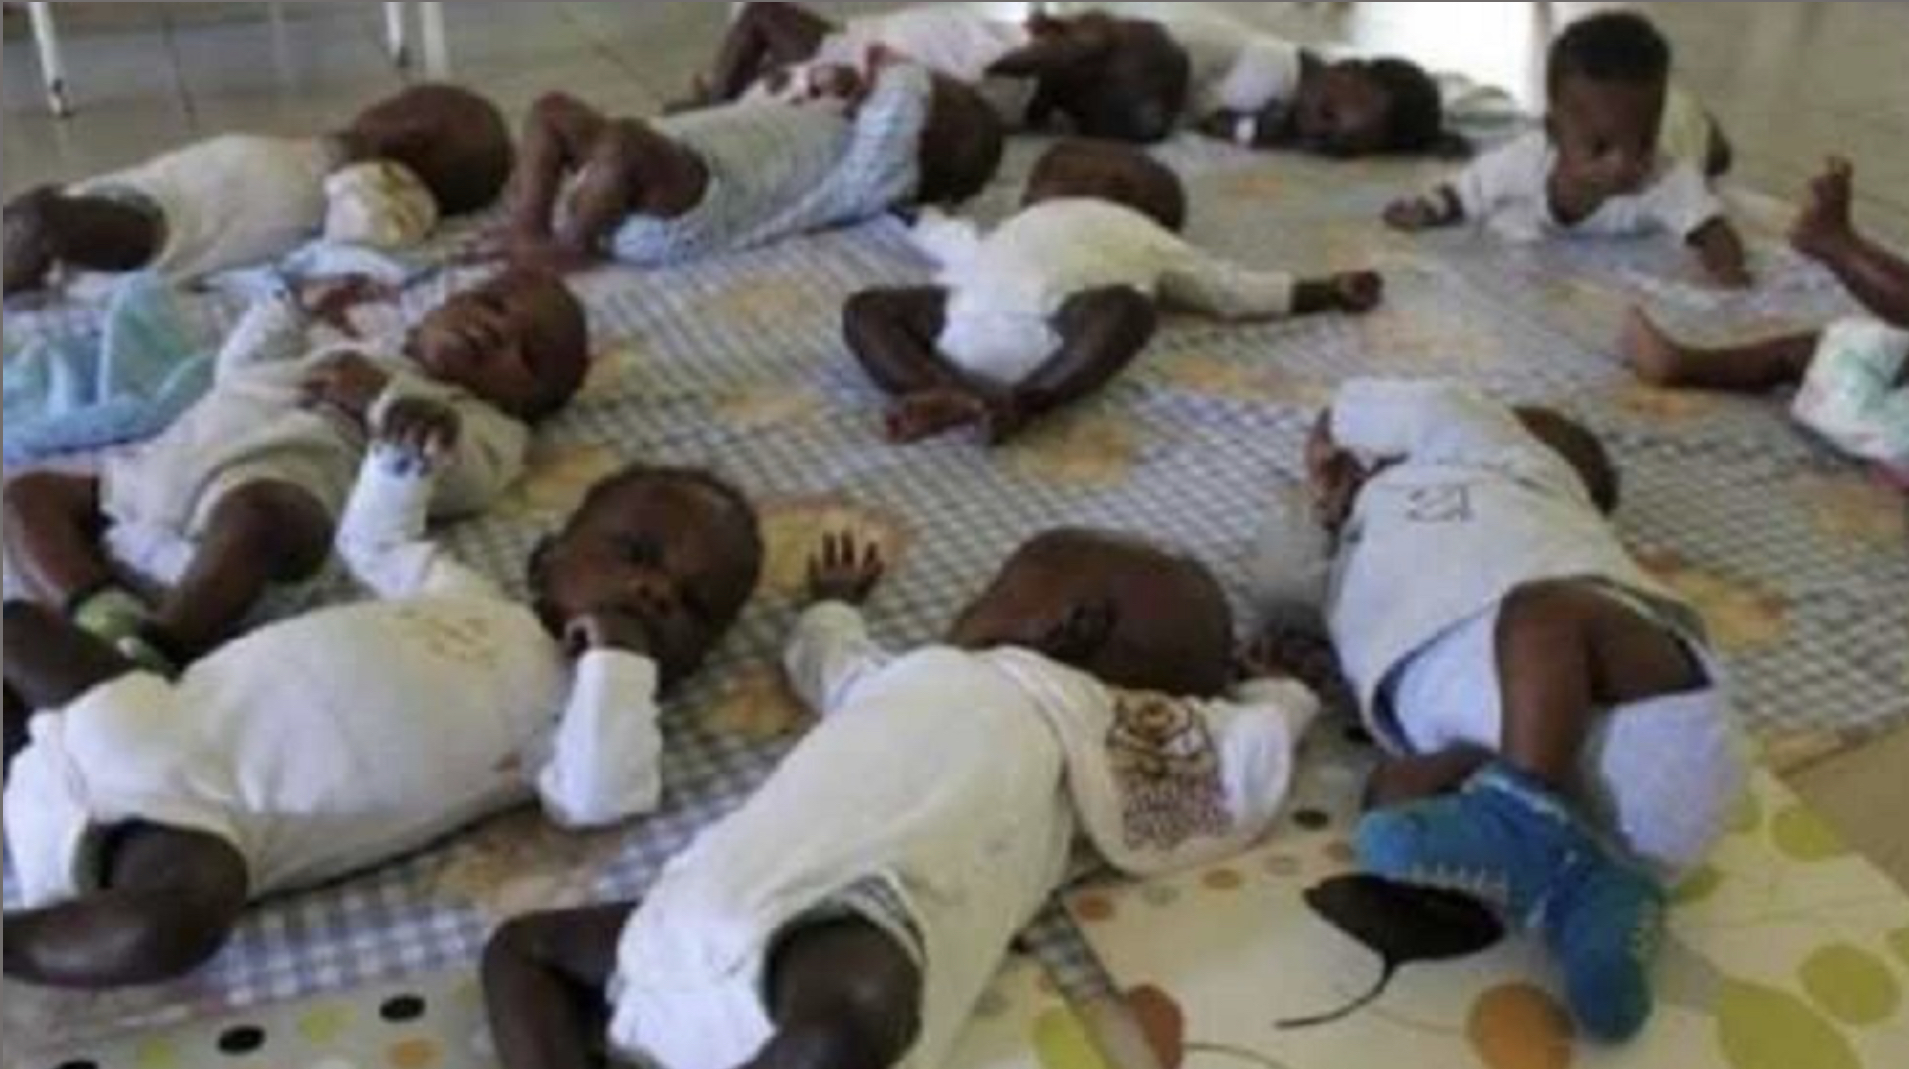 Horreur au Nigeria : L’armée découvre une «usine à bébés» pour des sacrifices rituels